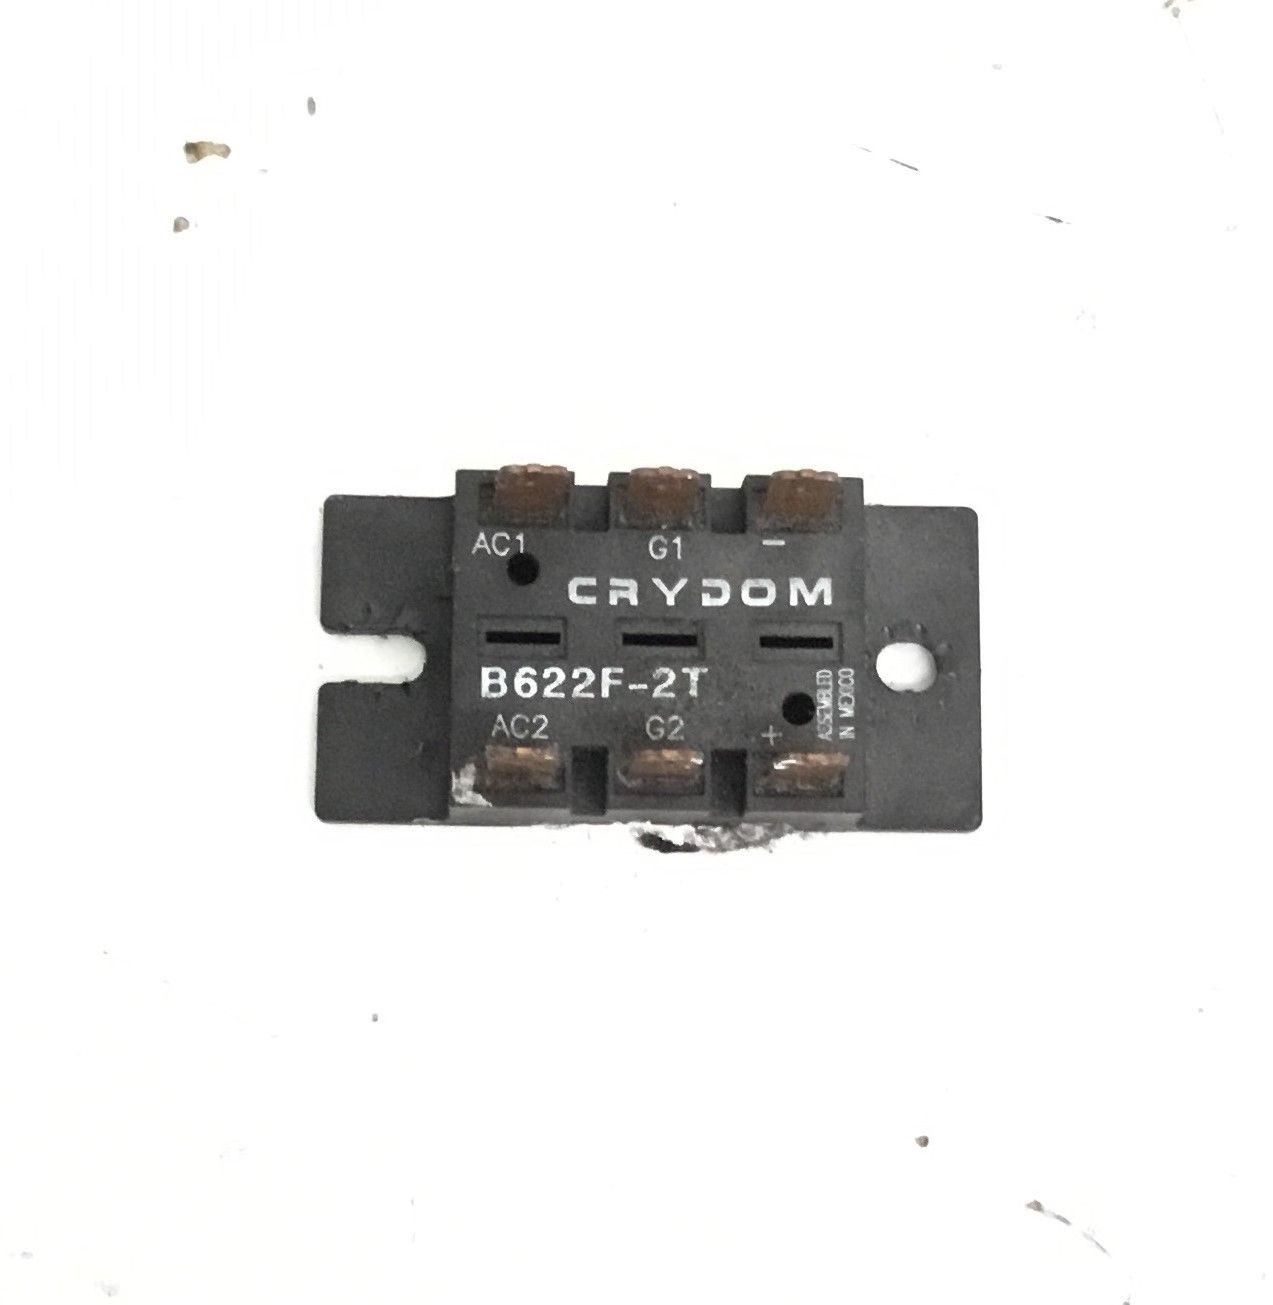 Precor M9.45 Treadmill Crydom B622f-2t Thyristor Module - Power Module 41166-101 (Used)